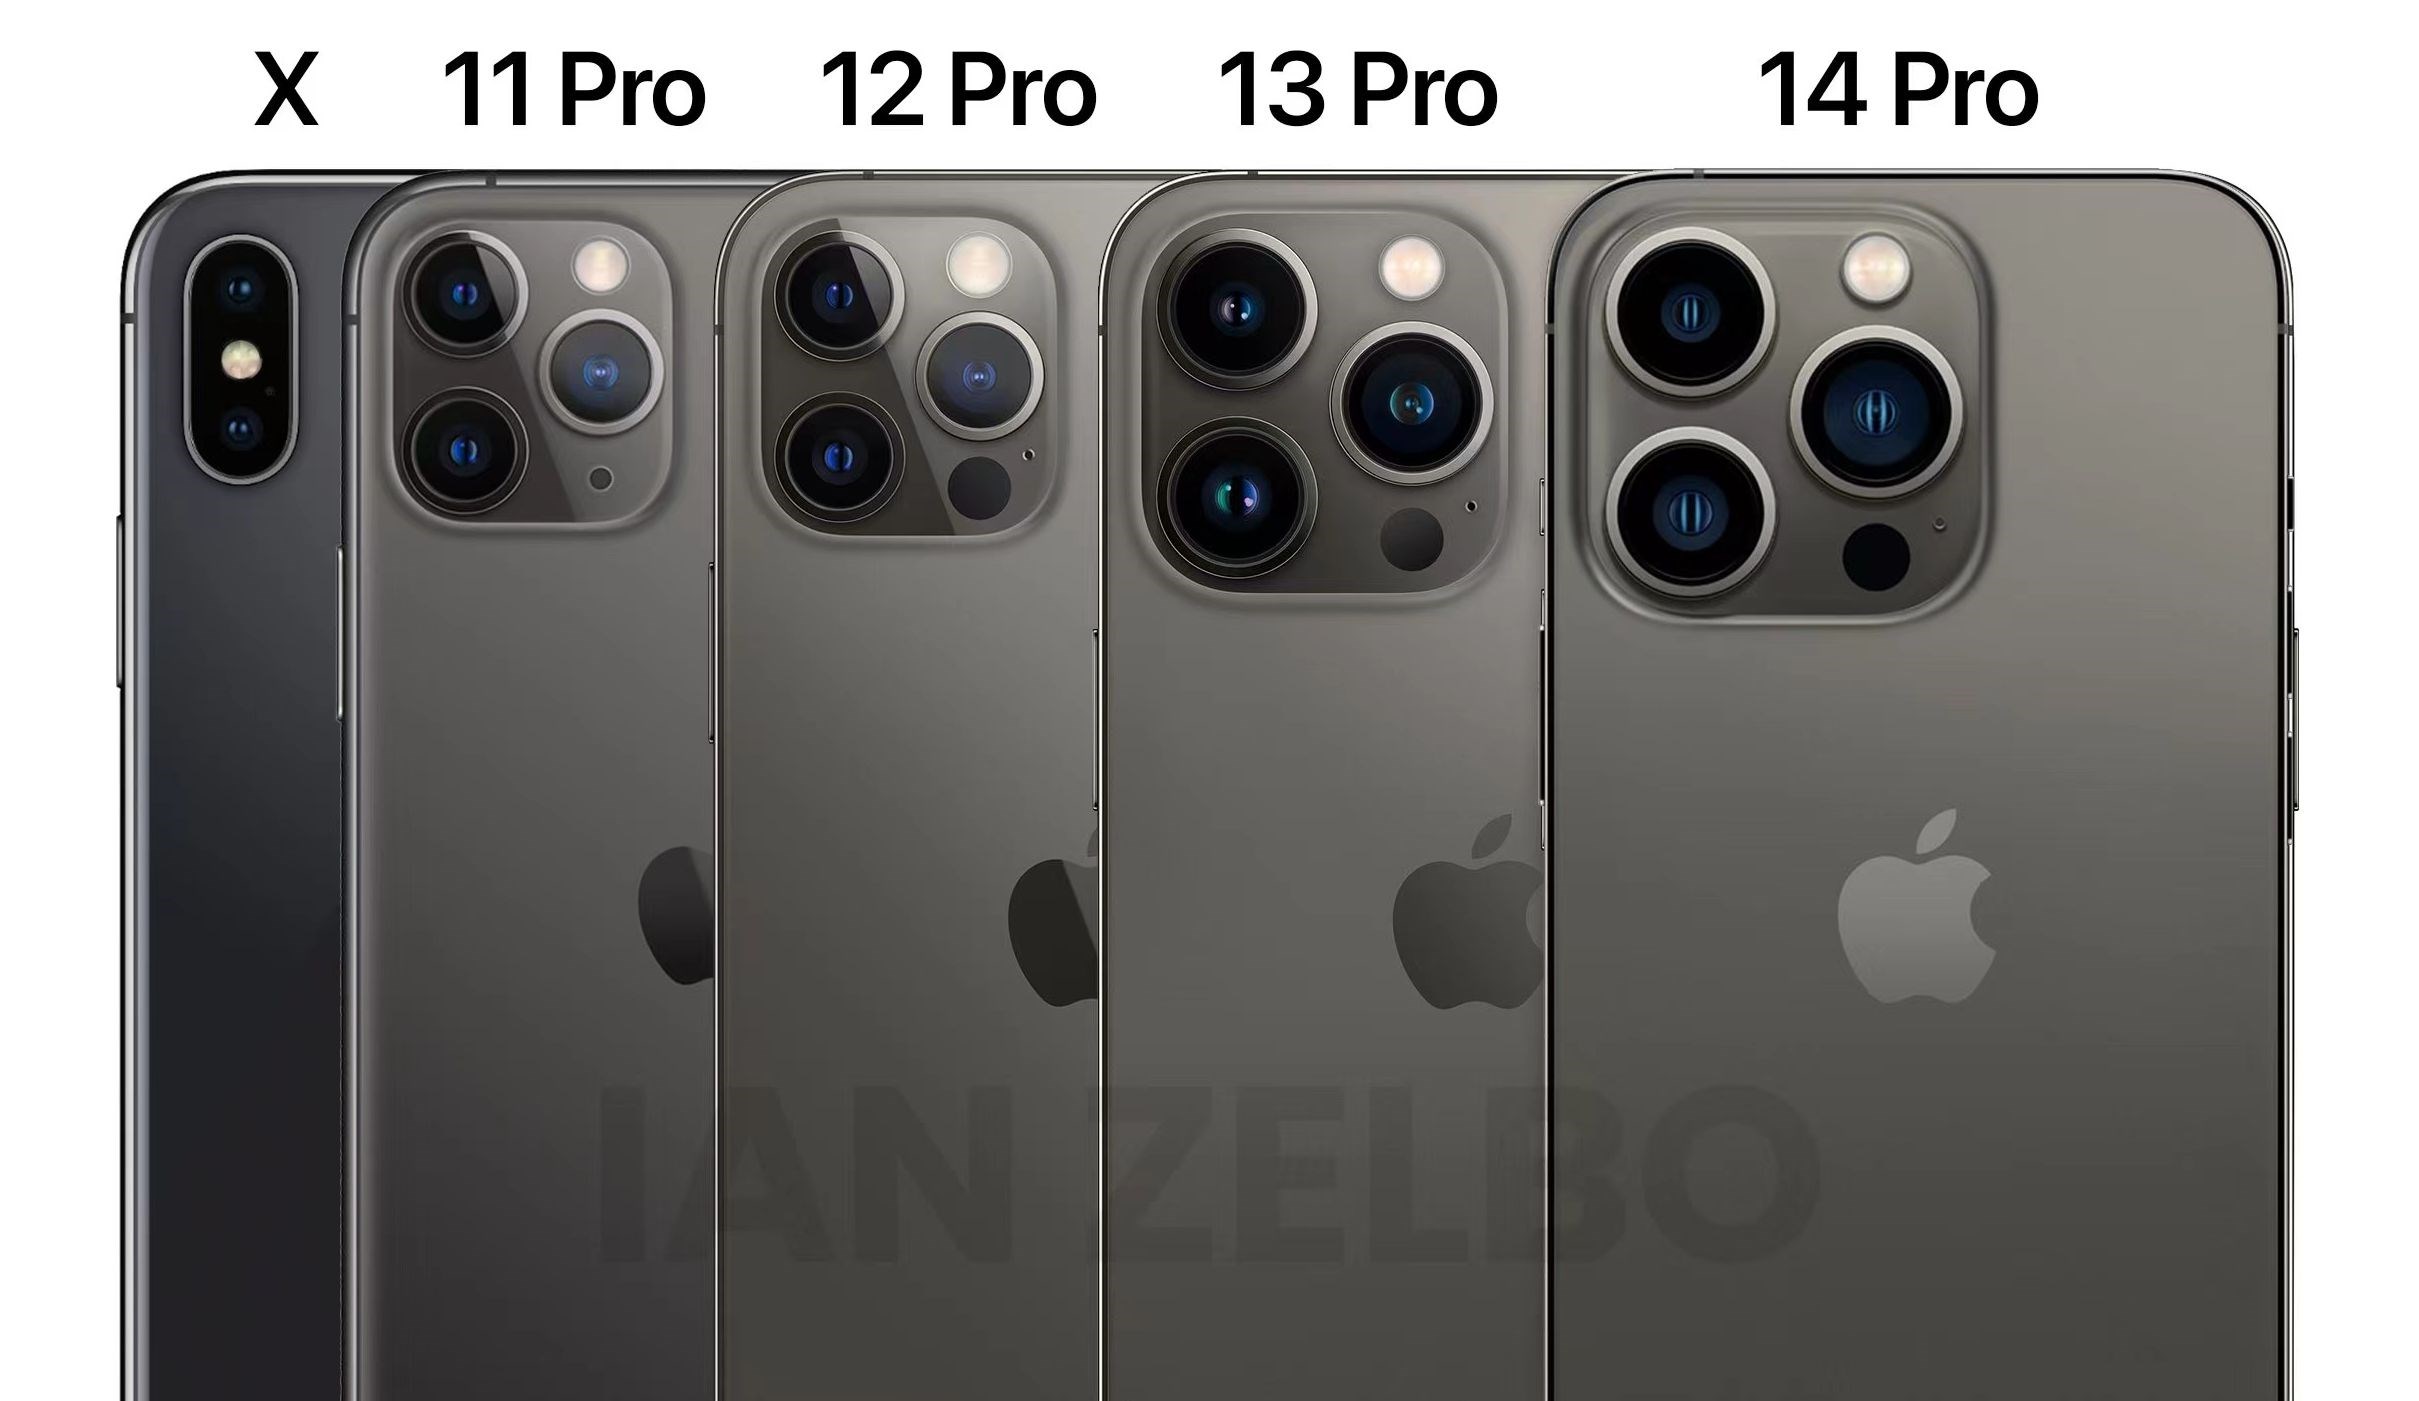 iPhone X, 11 Pro, 12 Pro, 13 Pro ve iPhone 14 Pro karşılaştırıldı